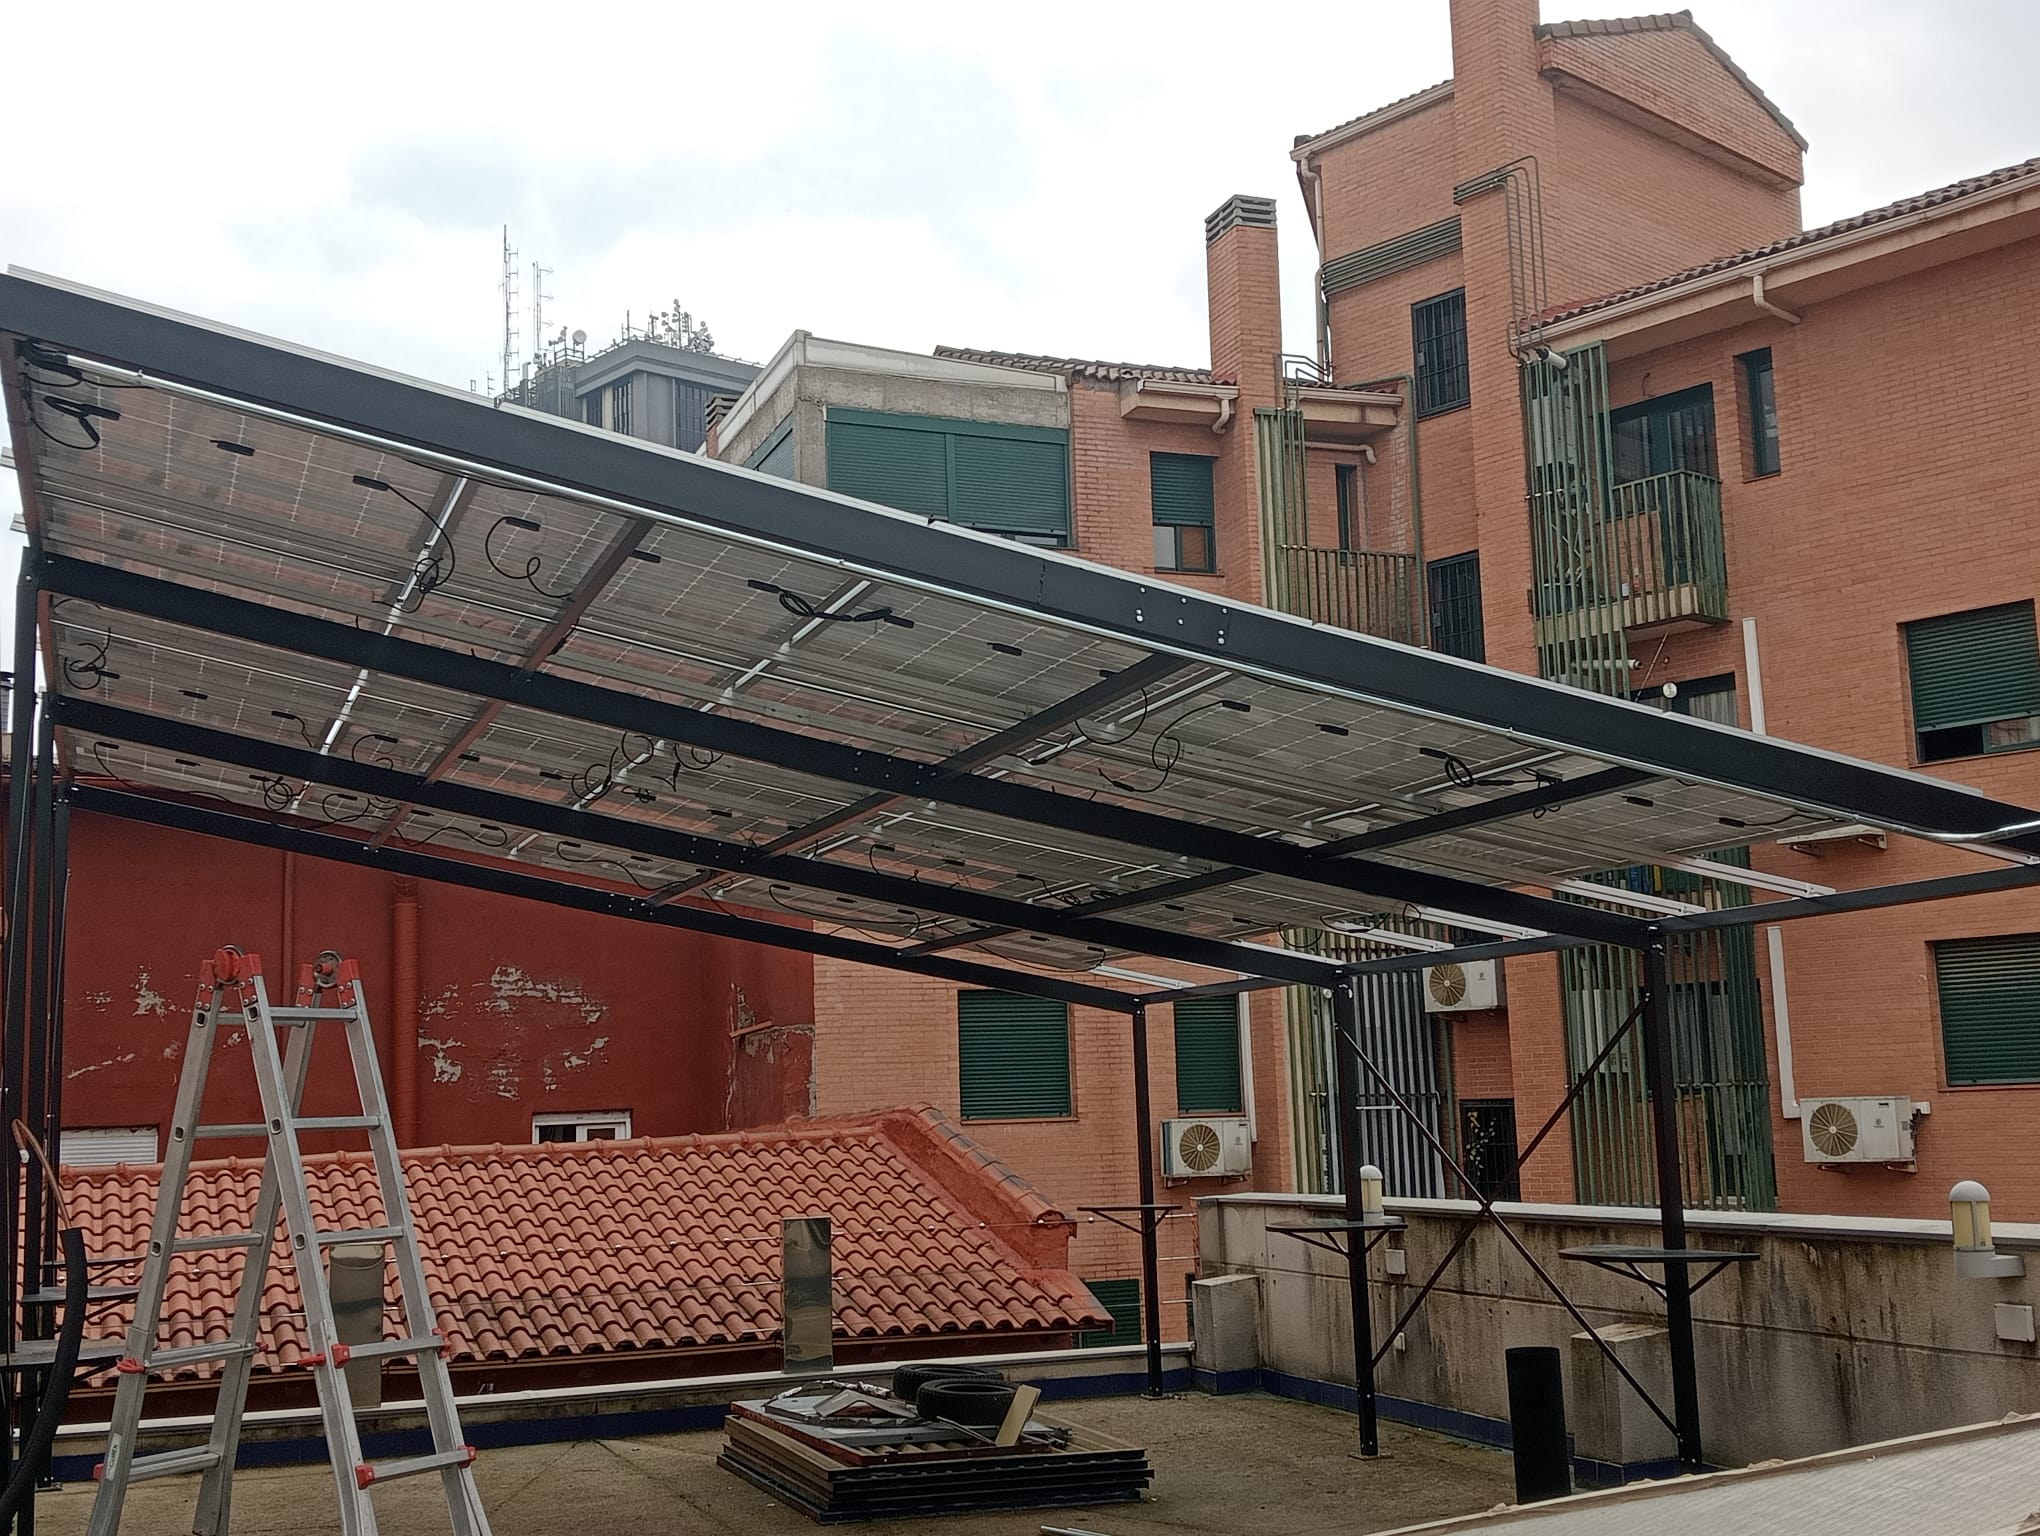 Instalaciones de placas solares realizadas en Rivas-Vaciamadrid por la empresa Urbi Solar.